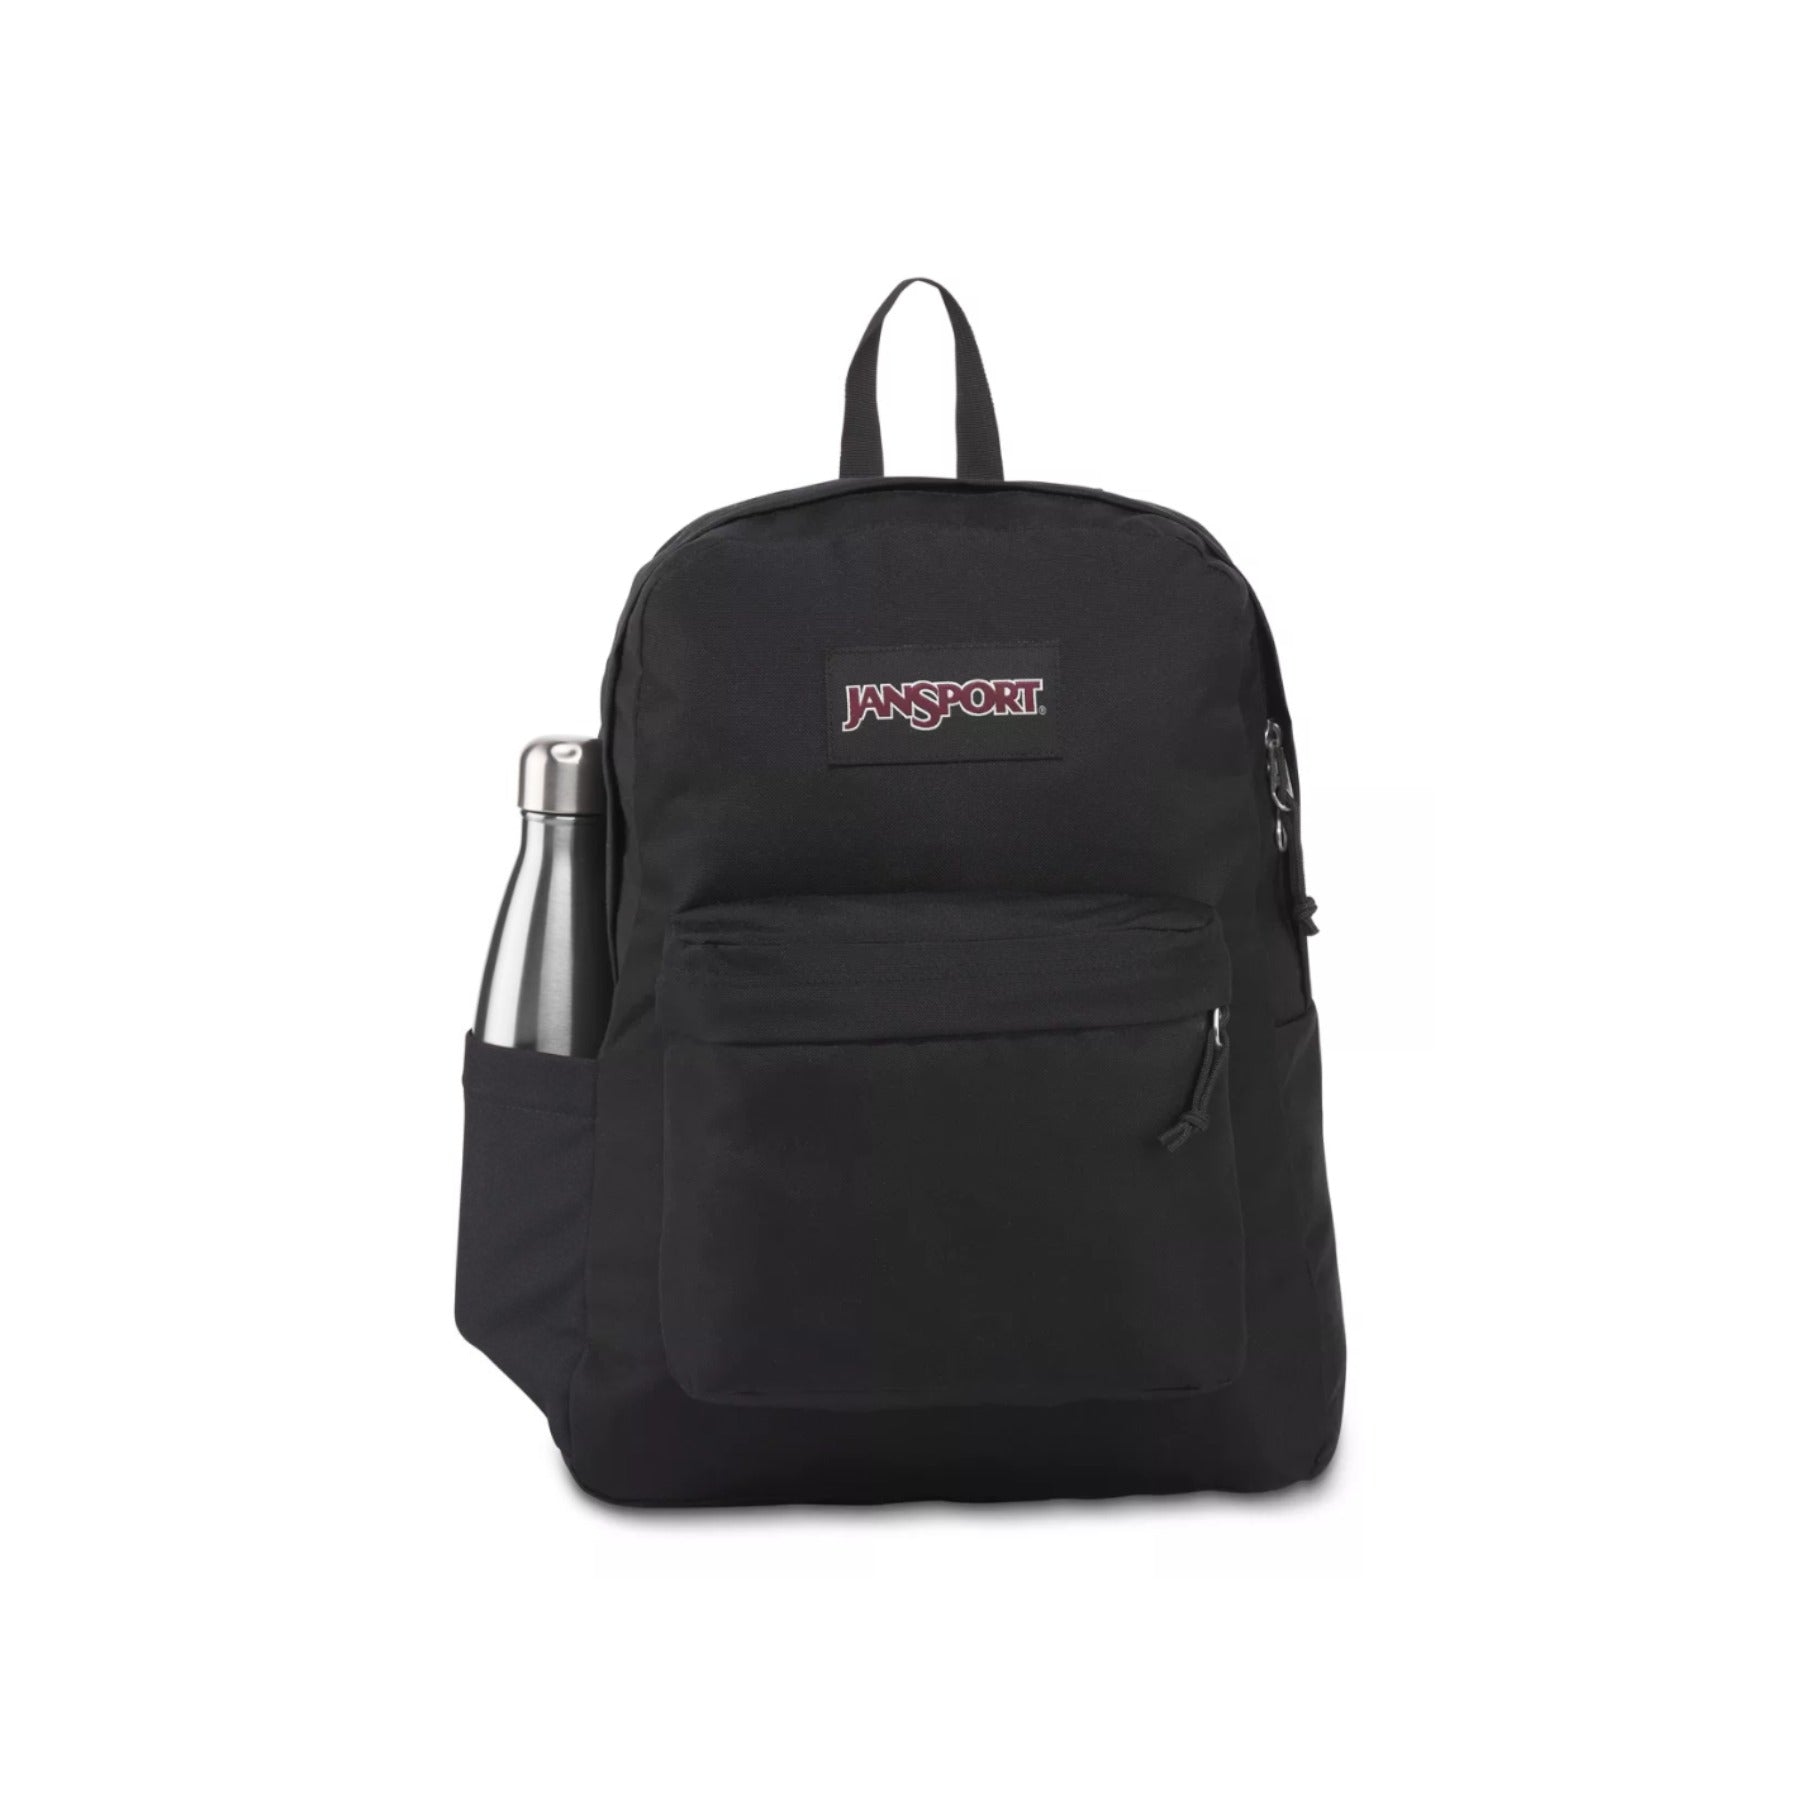 Jansport Superbreak Backpack - Black